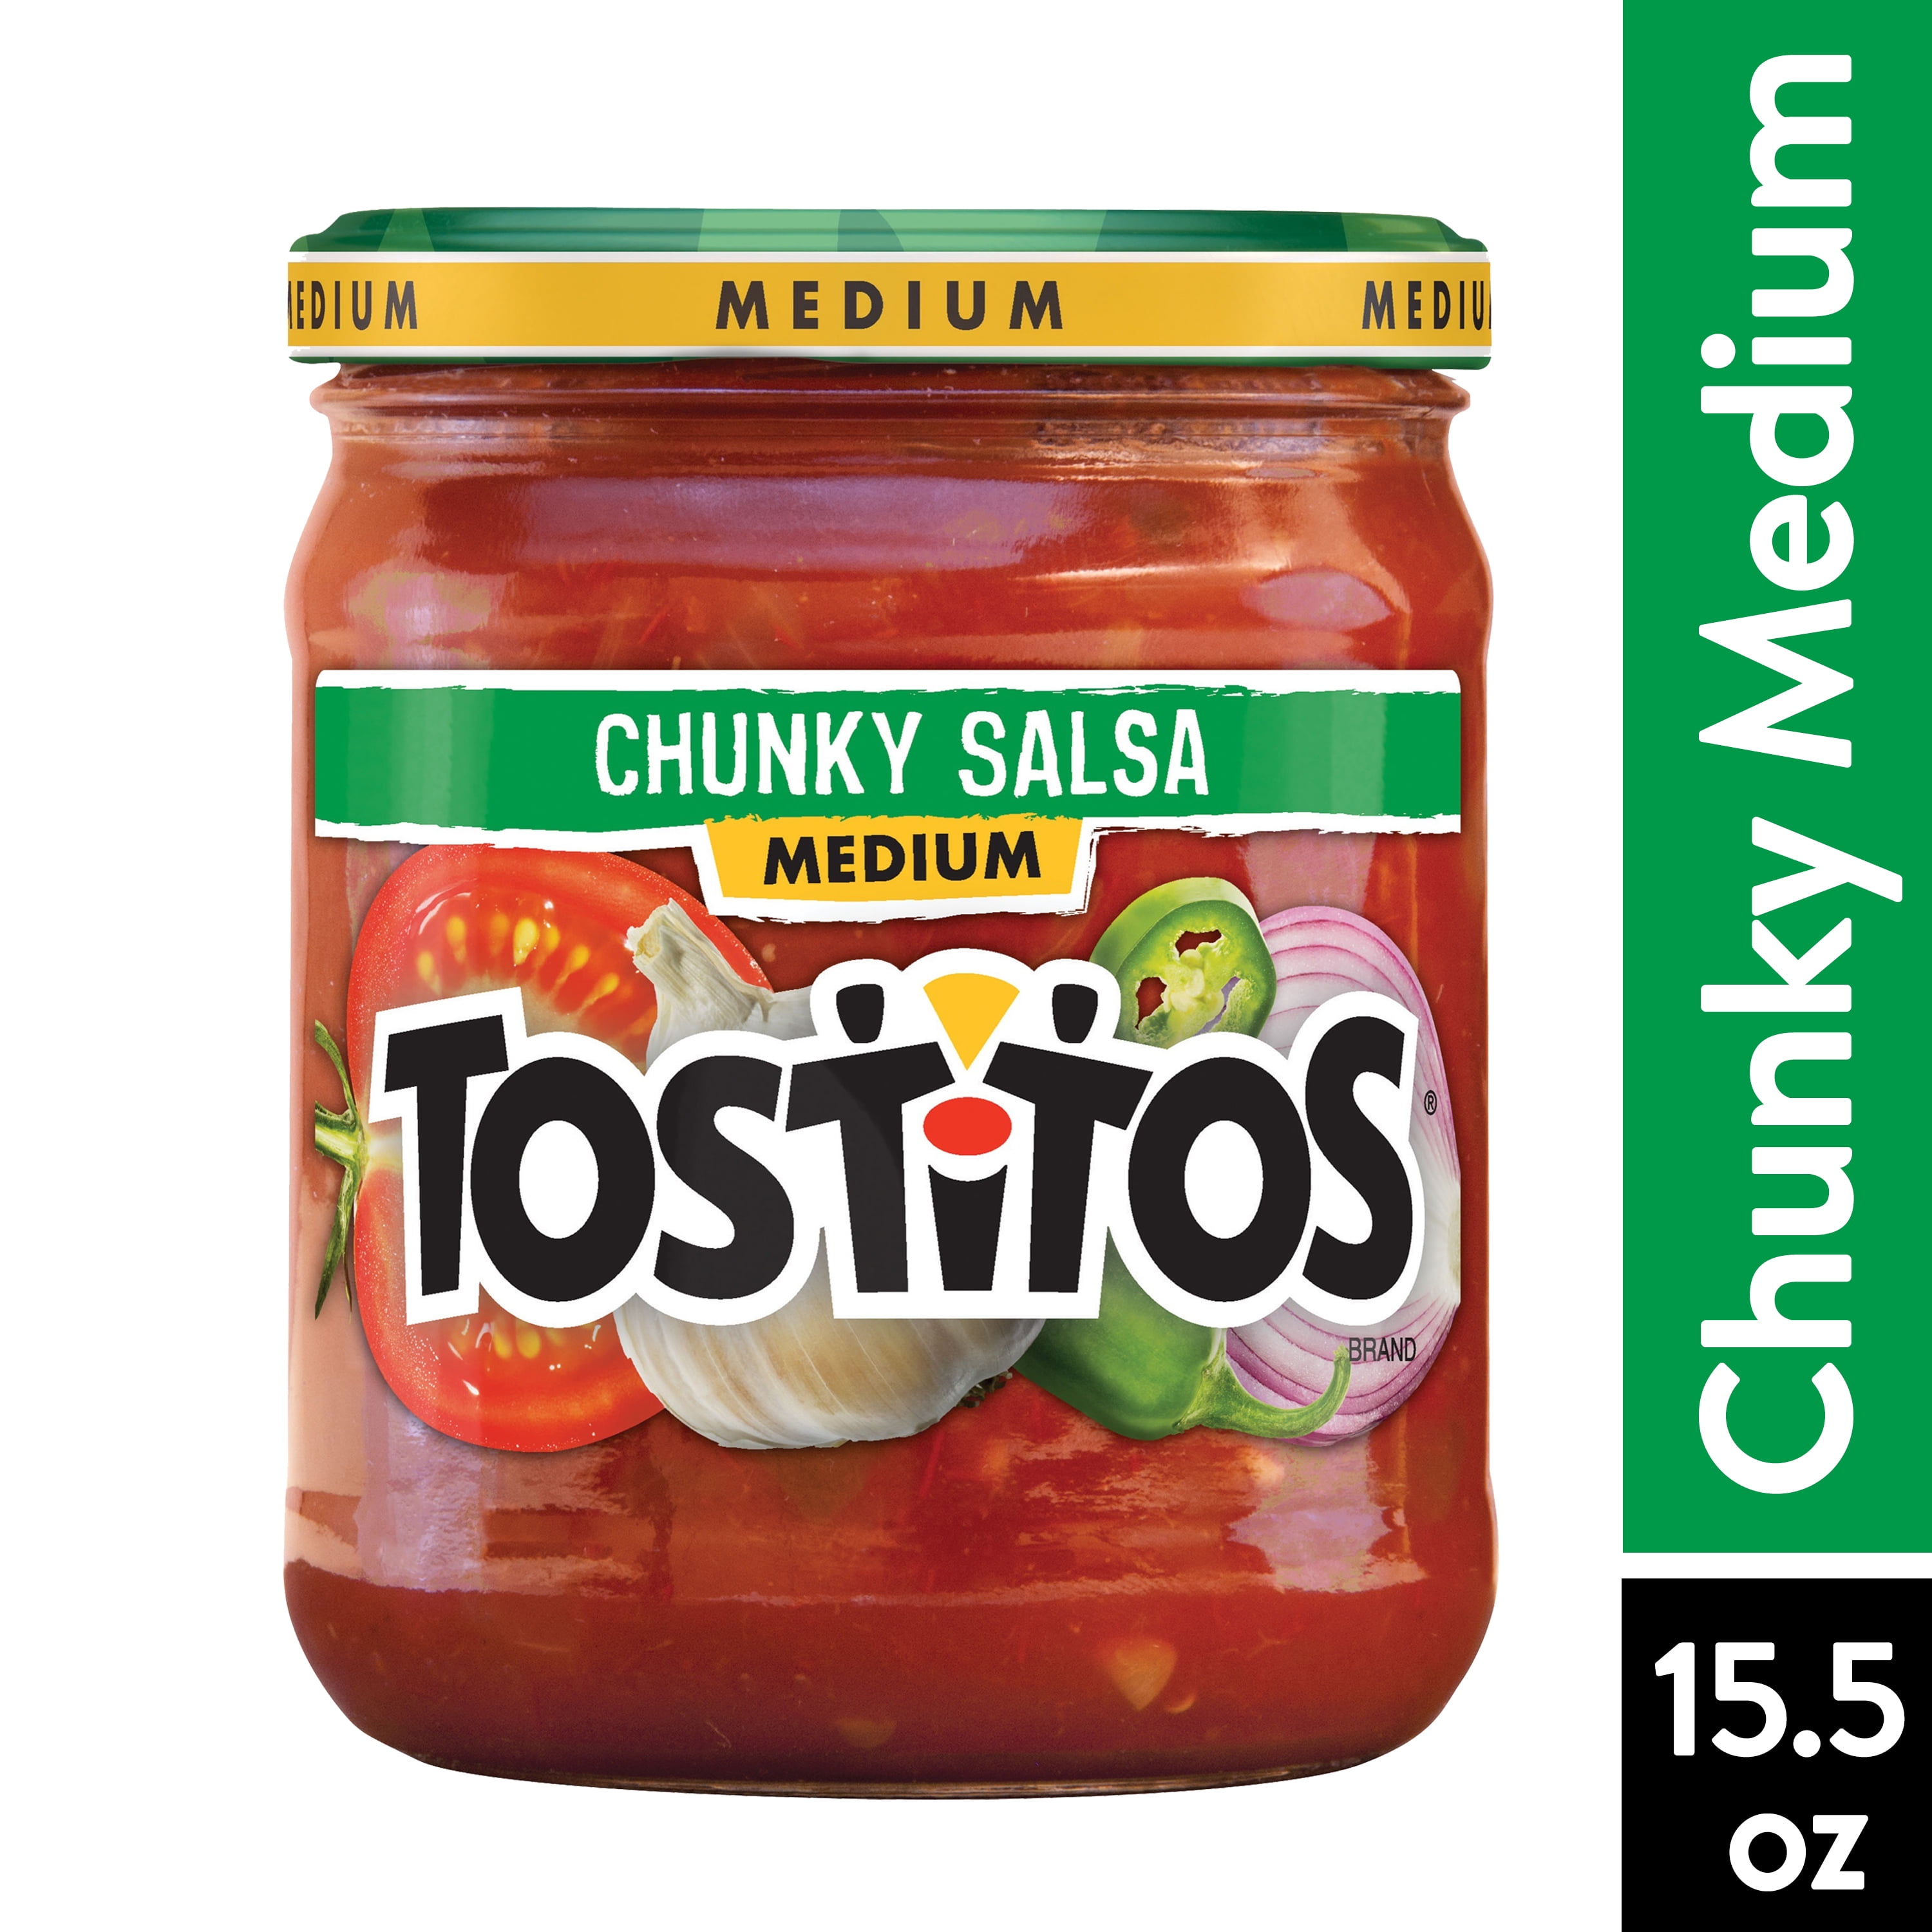 Tostitos Salsa, Medium Chunky Salsa, 15.5 oz Jar